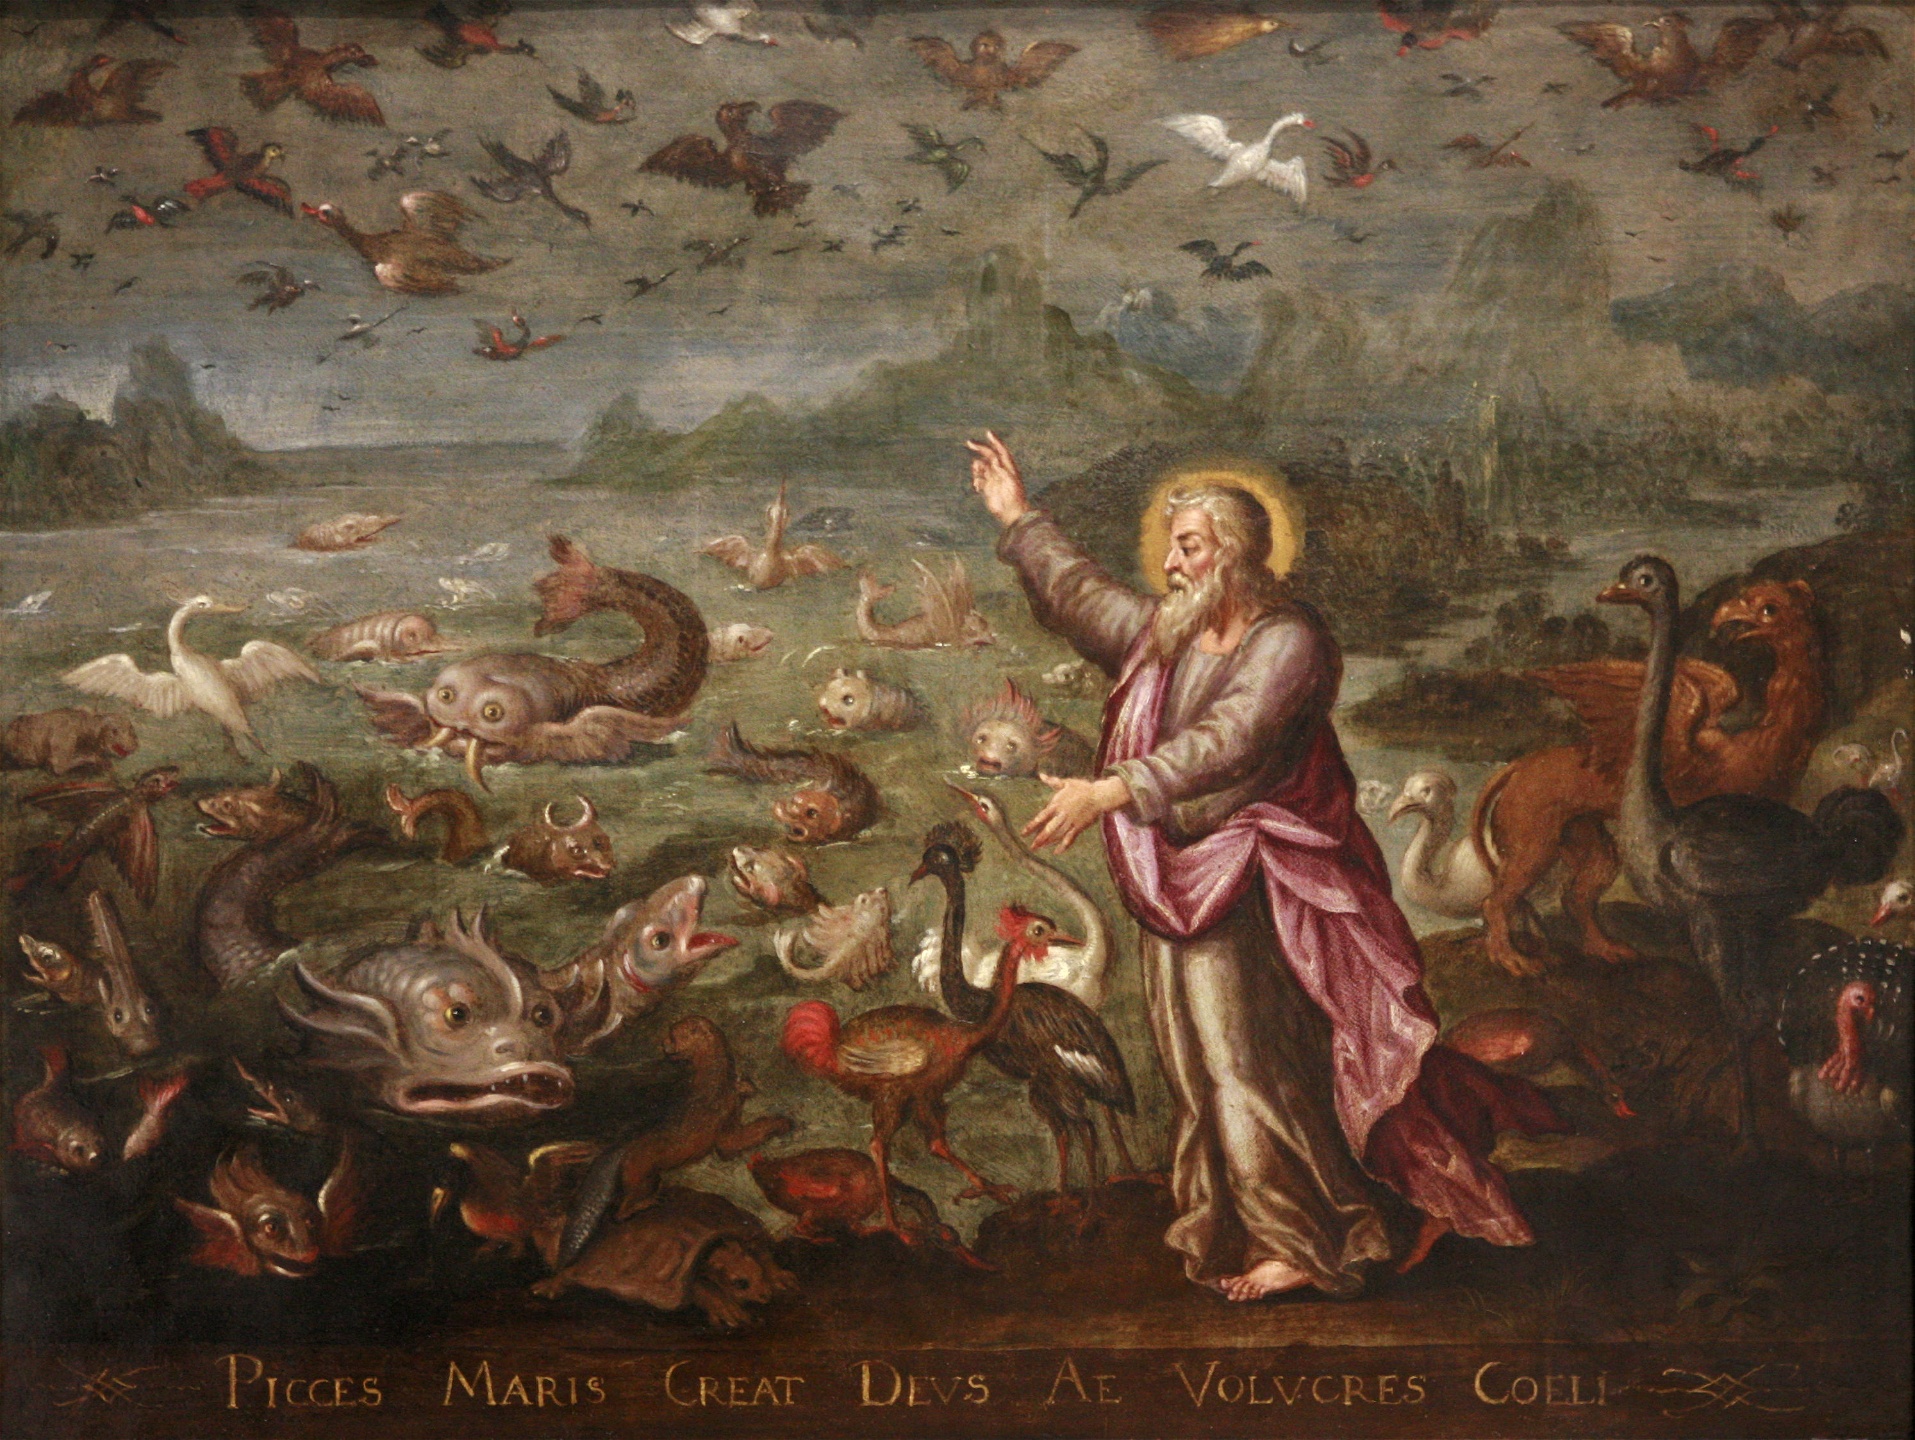 Gamla testamentet erbjuder en av de första idealbilderna av det goda arbetet med en arbetande gud som förebild. Målning av Martin de Vos, 1600–1602.